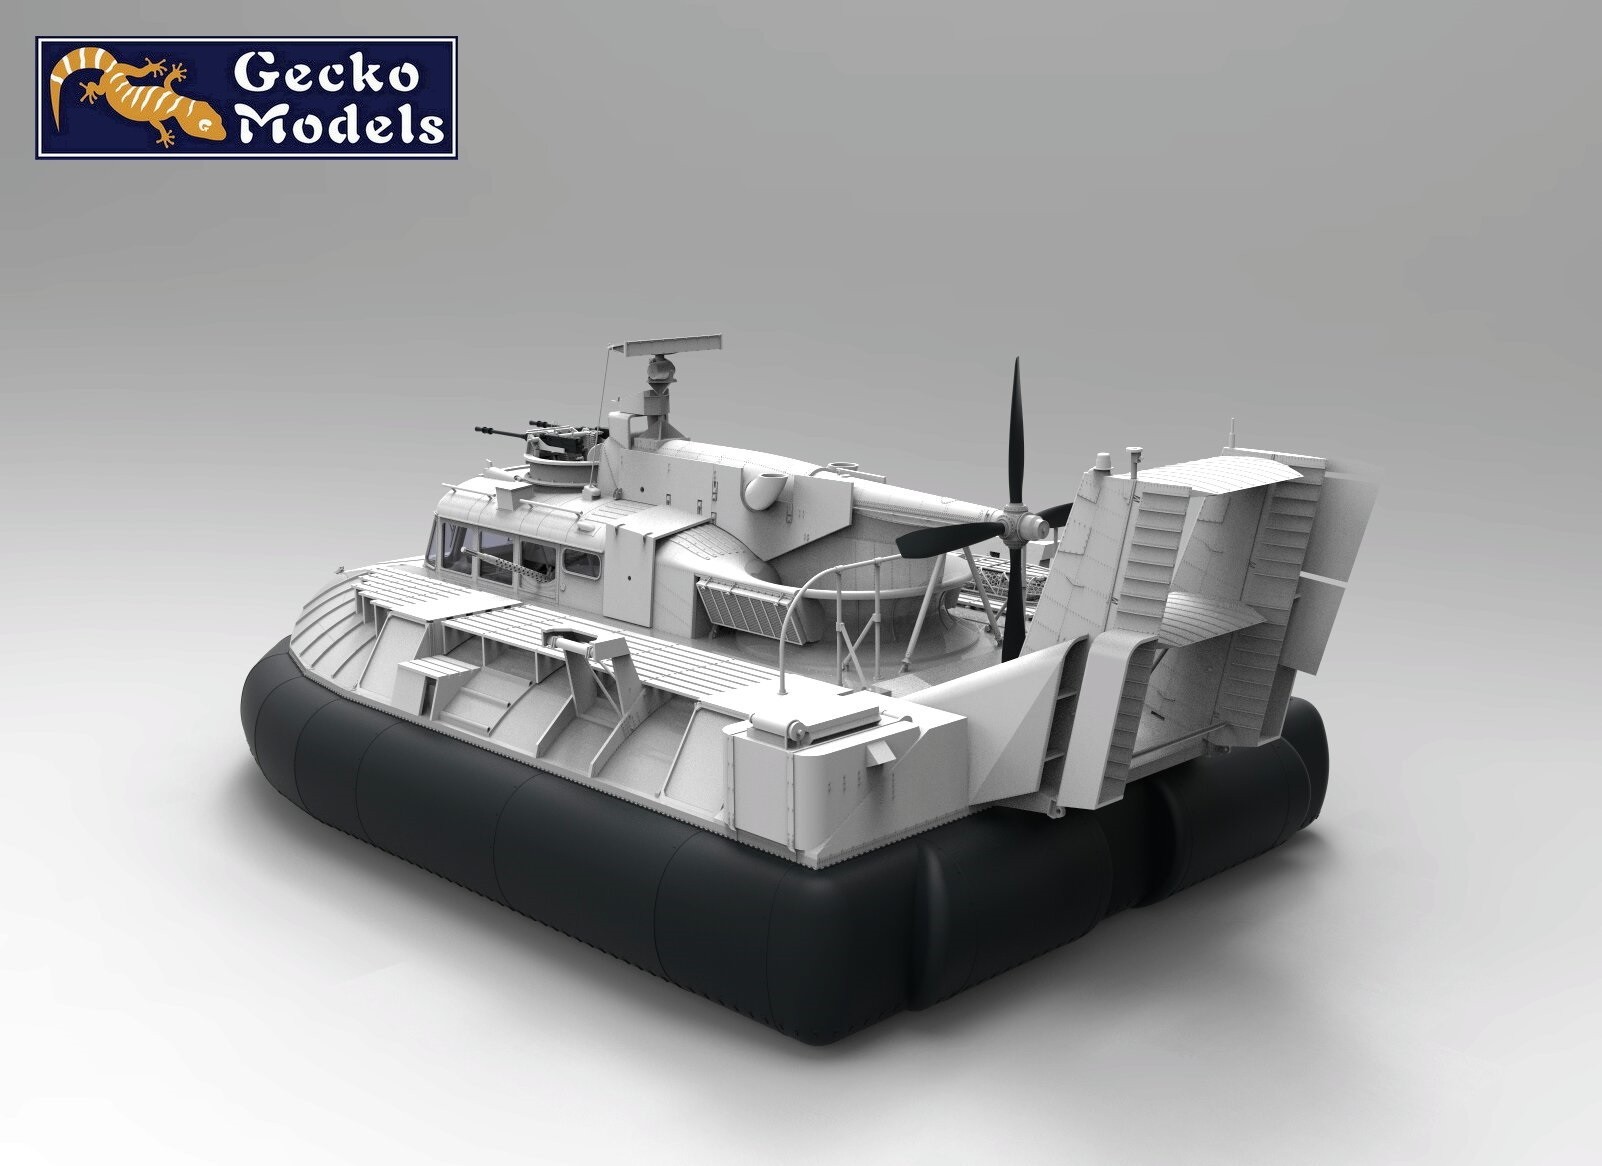 Gecko Models Announces Unique 1/35 Scale SK-5 PACV Model CAD-2